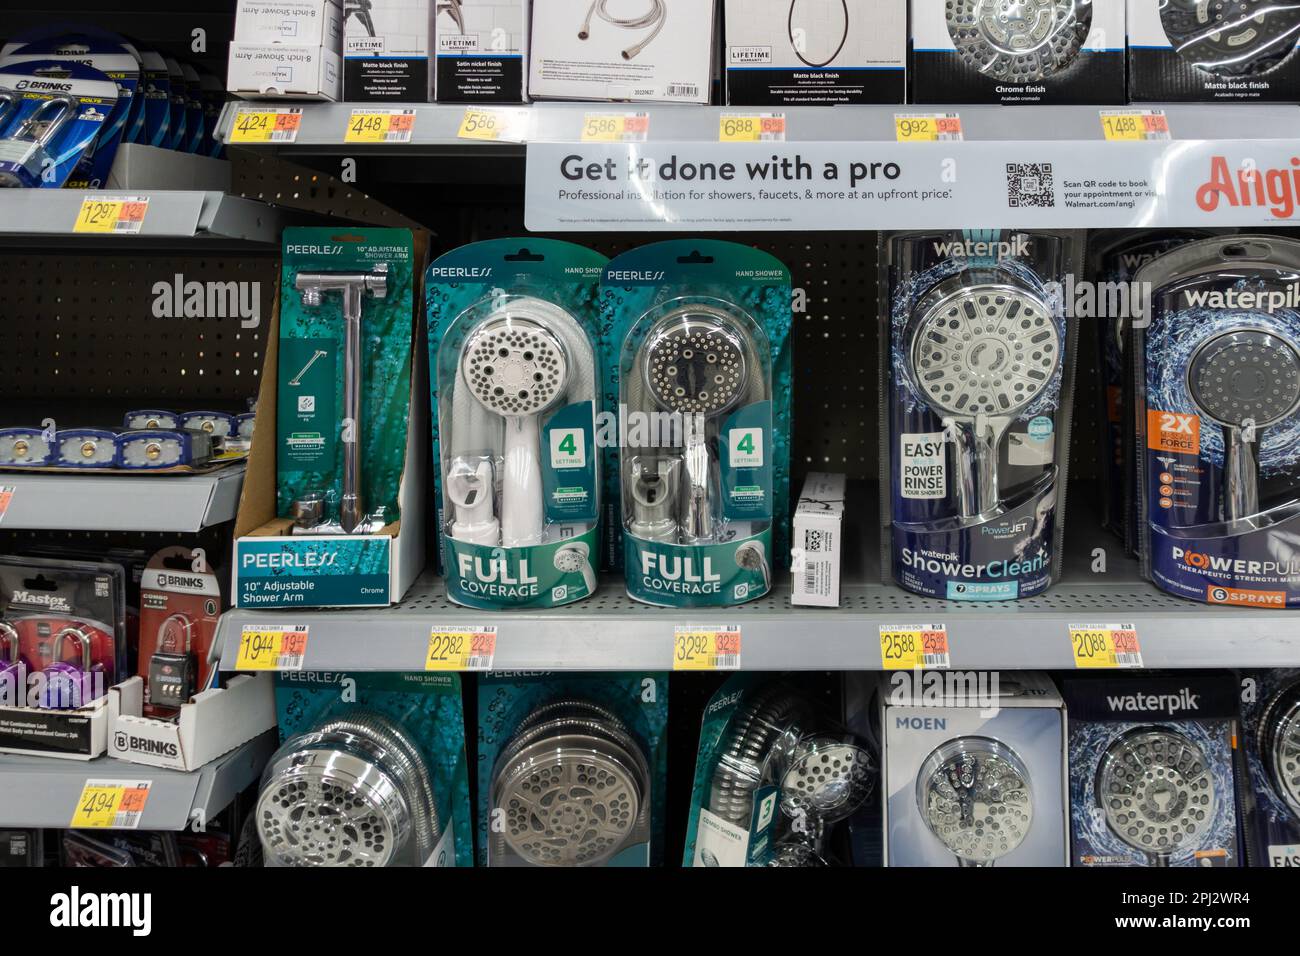 Duschkopfpakete und Kombinationsschlösser auf Regalen in einem Walmart Supercenter in Wichita, Kansas, USA. Stockfoto